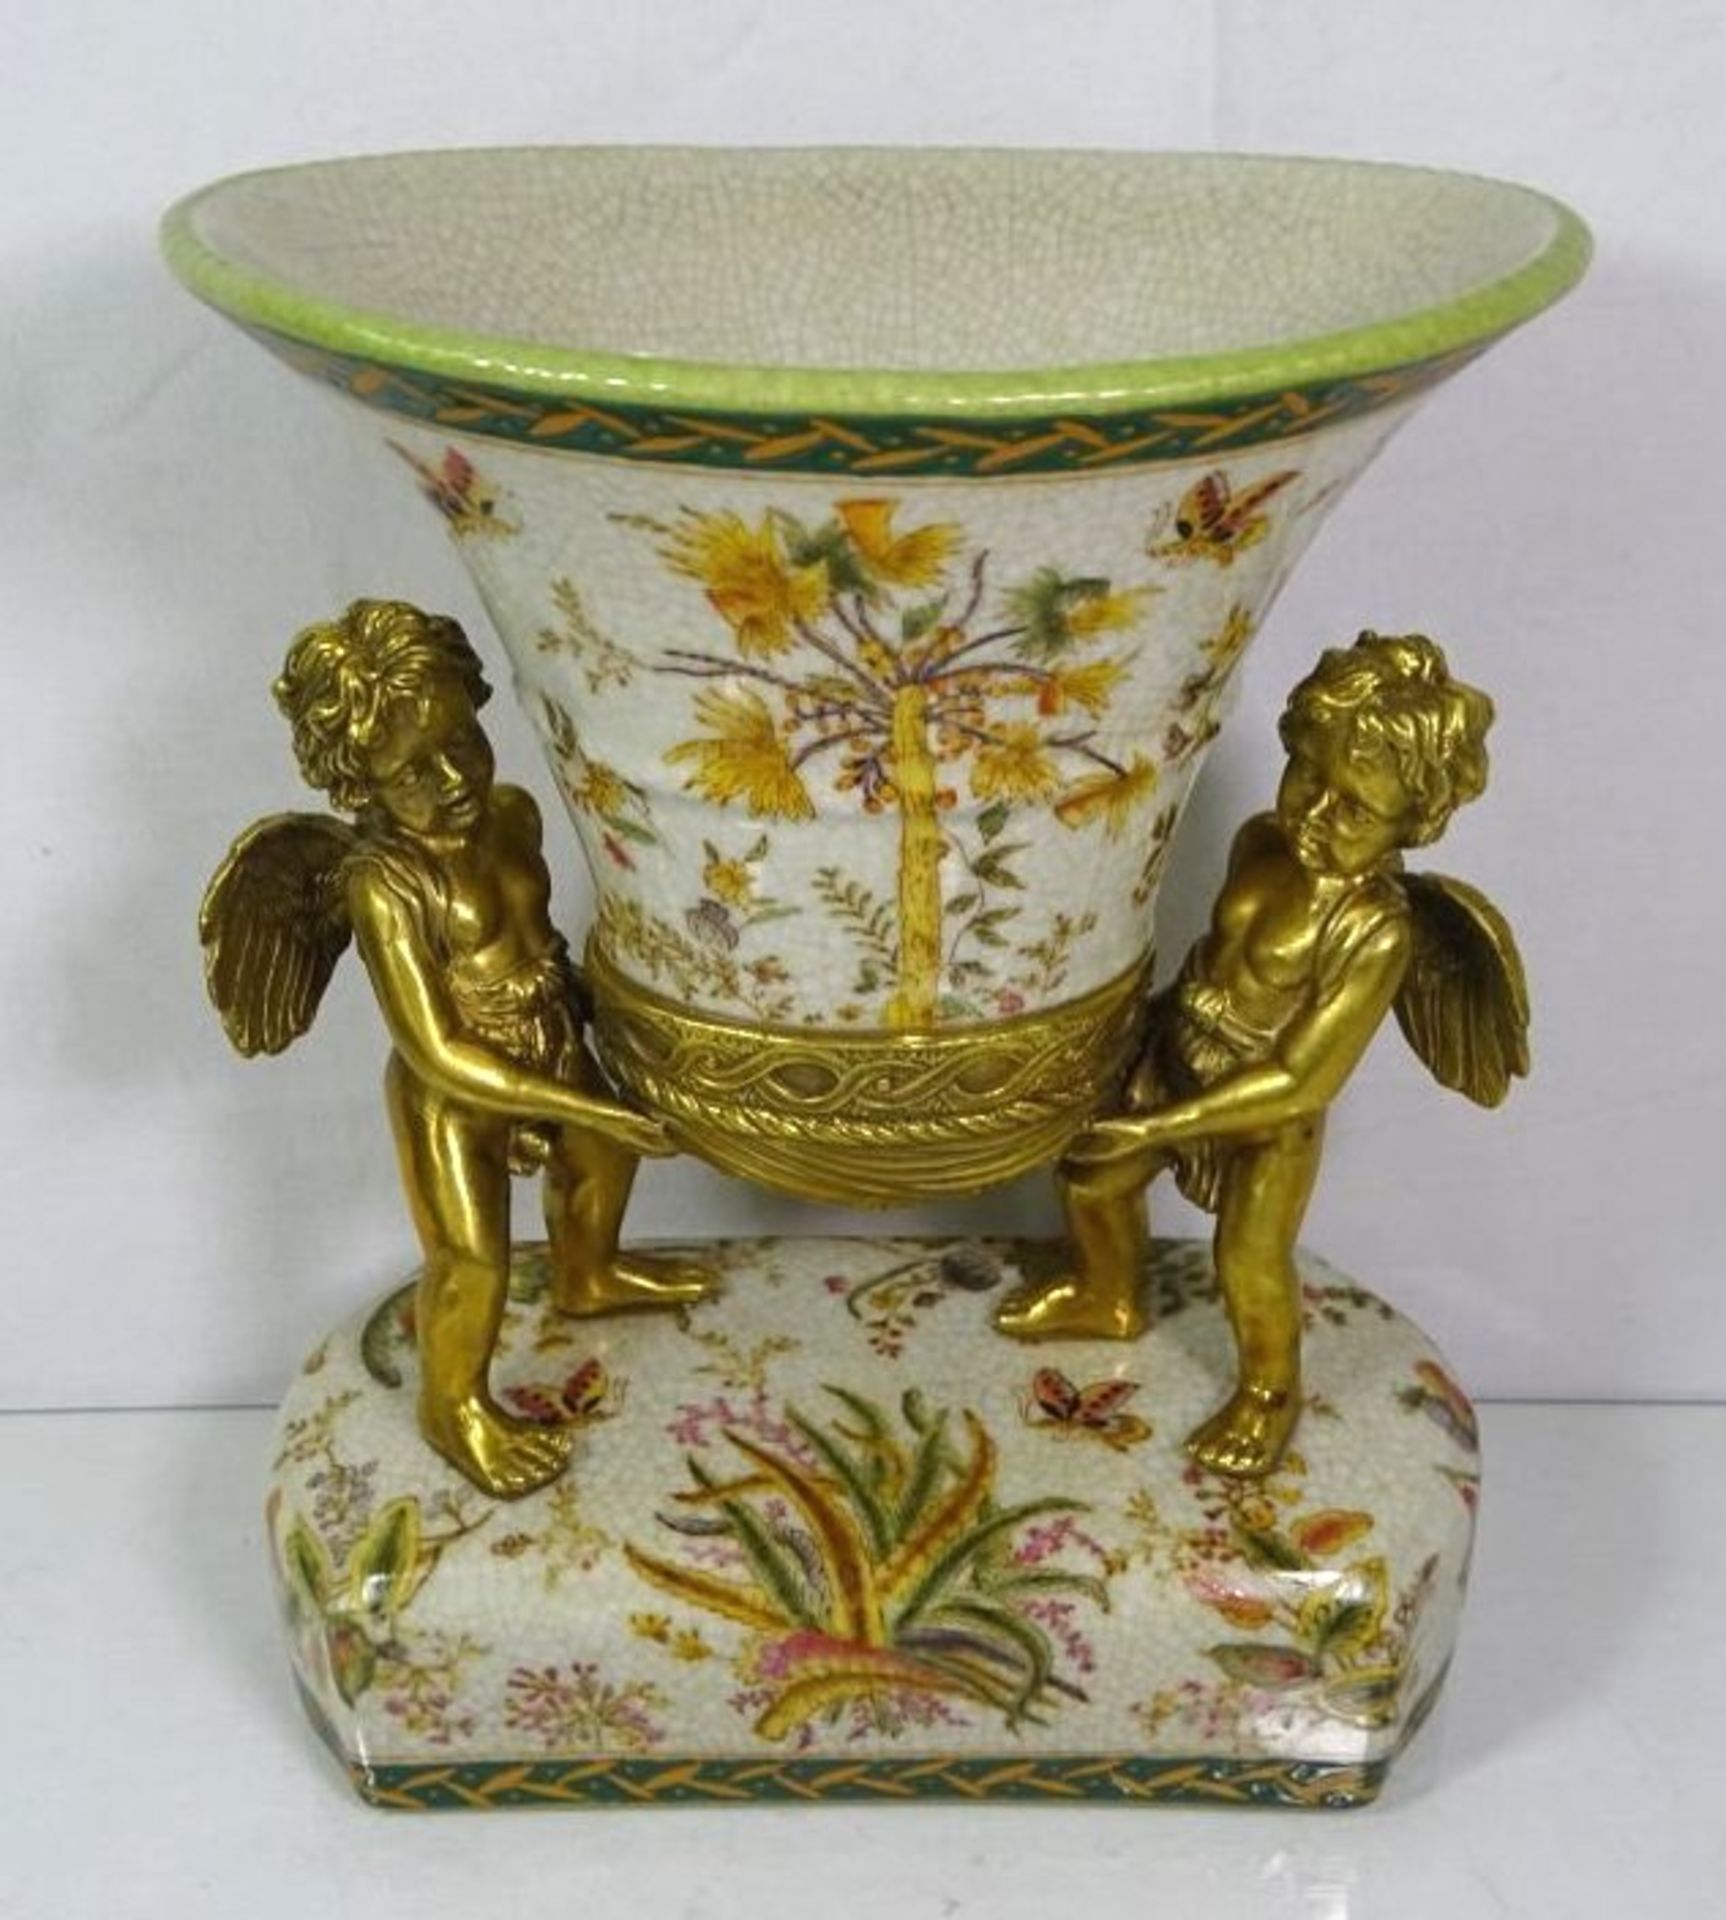 Vase getragen von 2 Bronze Putti, florale Bemalung, gemarkt, 20. Jhd., H-26cm B-24cm T-16cm.- - - - Bild 2 aus 4